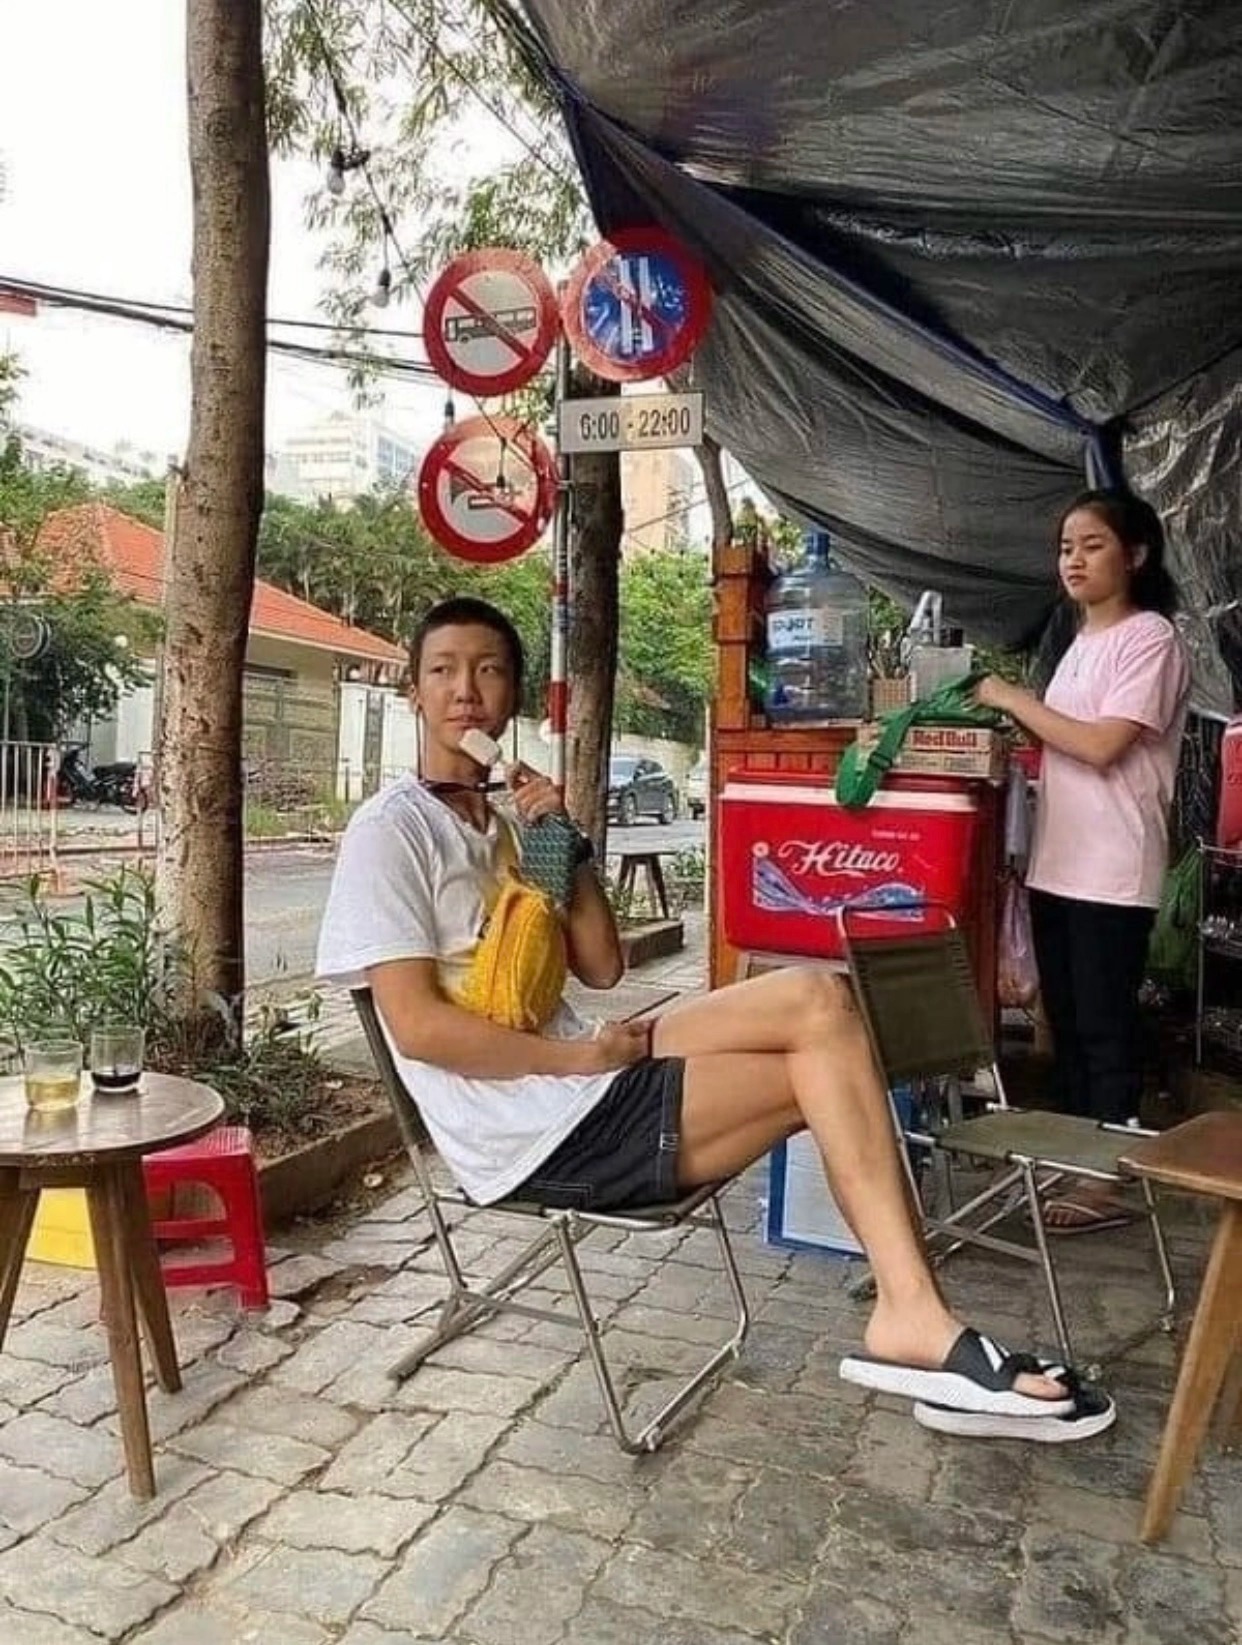 Quán nem ở Hà Nội được WINNER ghé ăn bất ngờ gây sốt bởi tấm biển kỷ niệm, ai xem xong cũng phải bật cười - 17